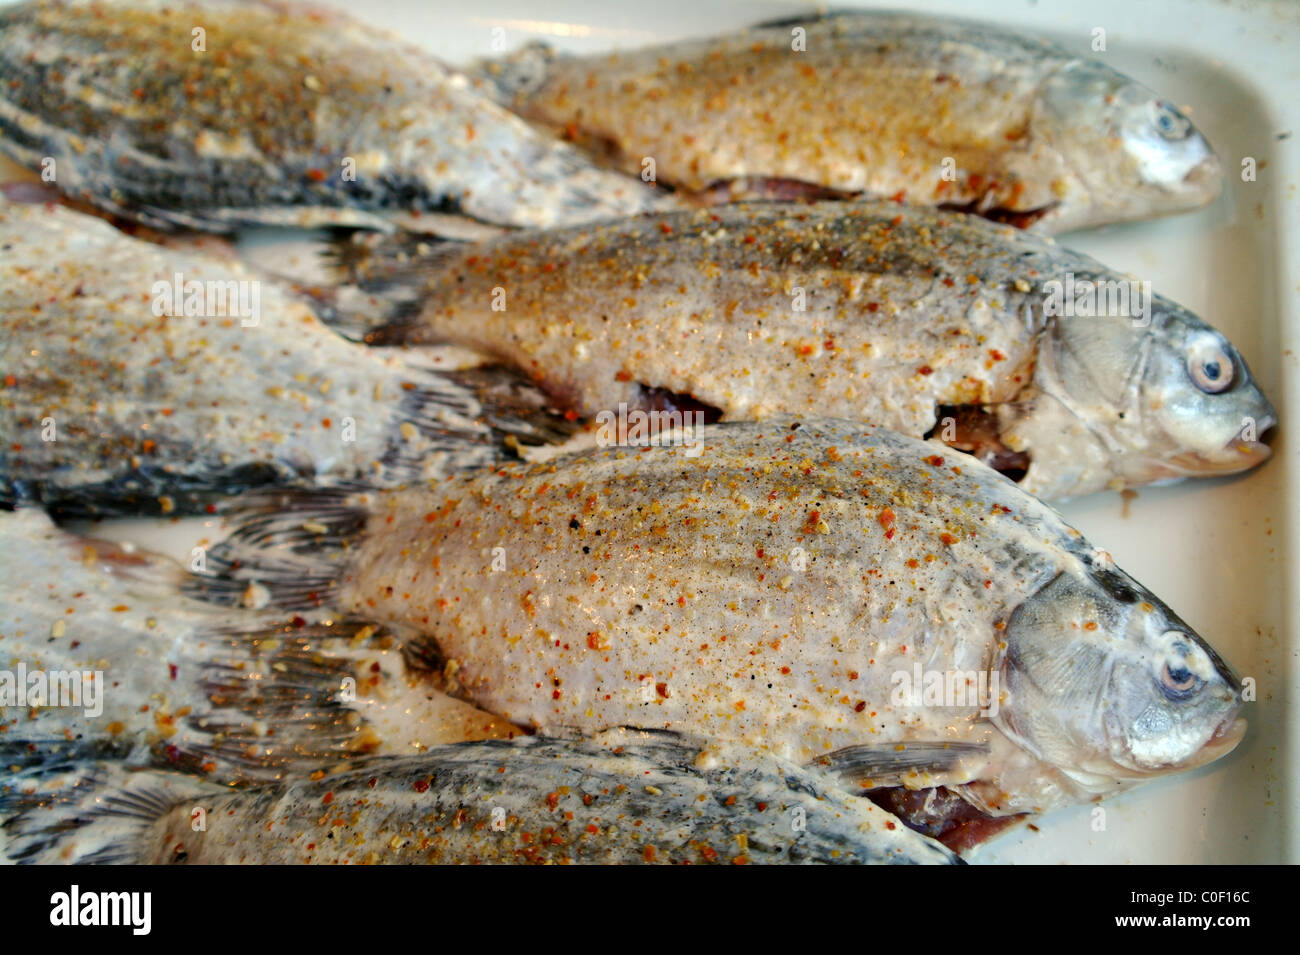 Pesce grezzo il carassio sul protwin, preparato per una frittura Foto Stock